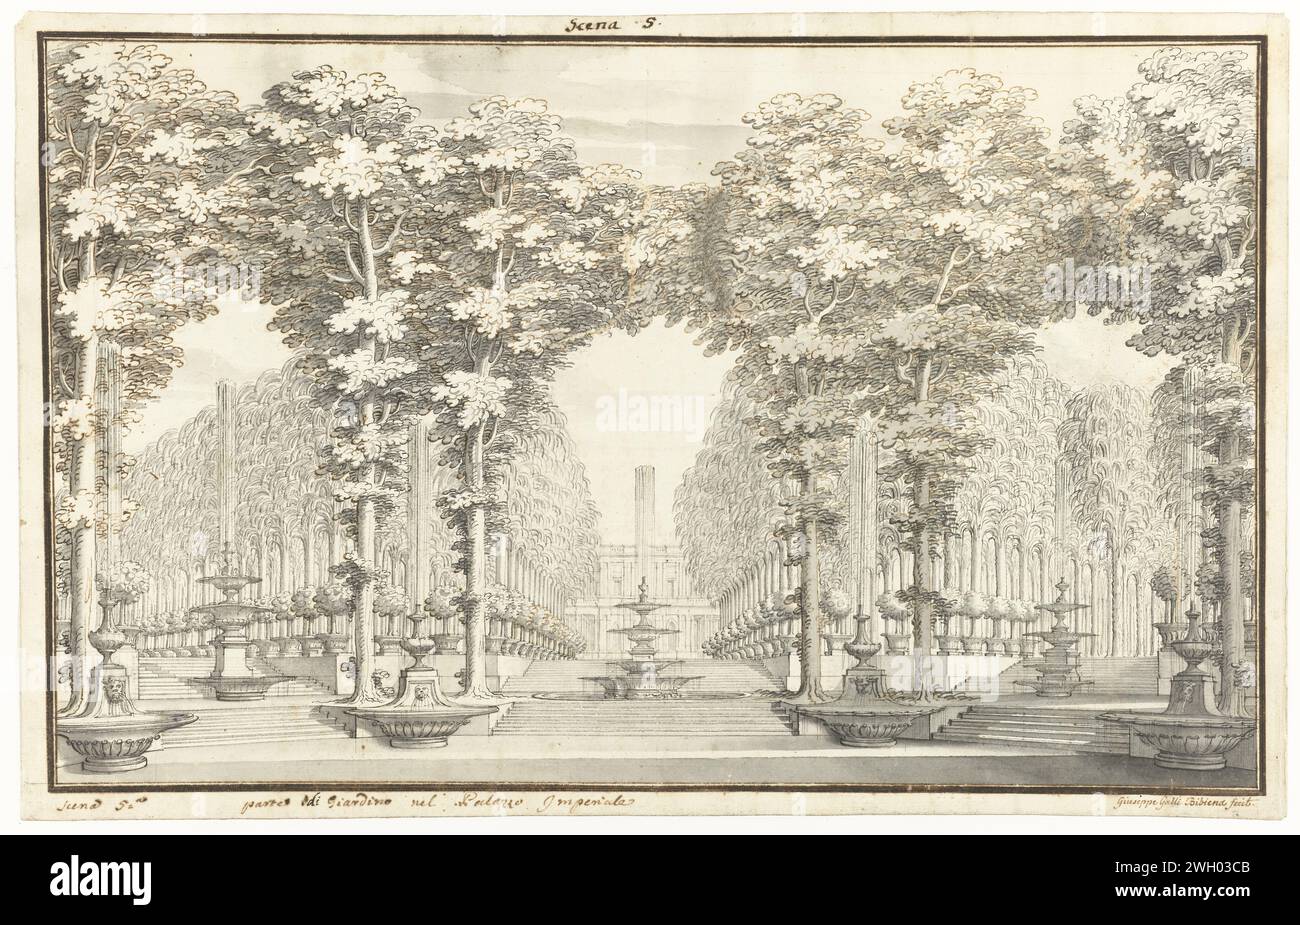 Dekordesign, das den Garten des Kaiserpalastes darstellt, Giuseppe Galli Bibiena, 1706 - 1756 Zeichnung Design für ein Theaterdekor. Papier. Tintenstift / Pinsel Gartenbrunnen. Bühnendesign. Garten Stockfoto